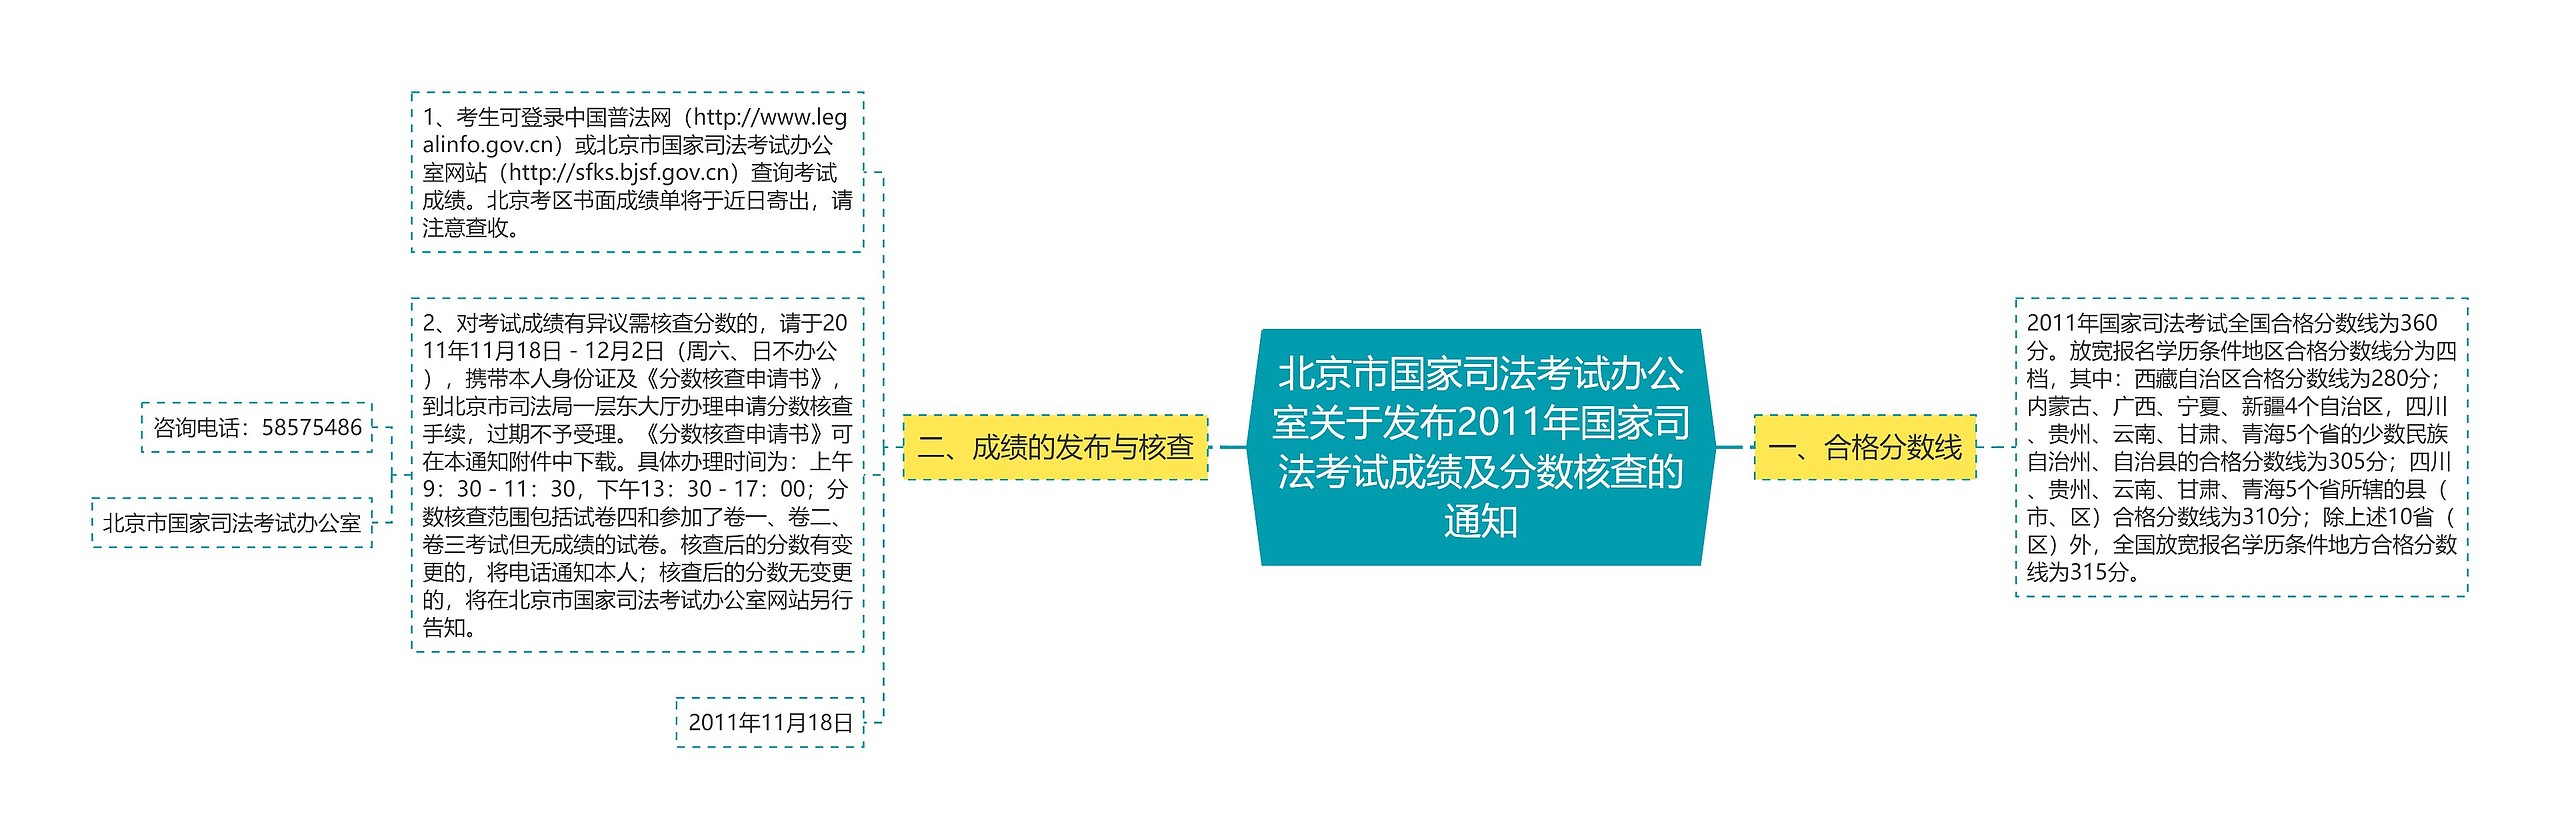 北京市国家司法考试办公室关于发布2011年国家司法考试成绩及分数核查的通知